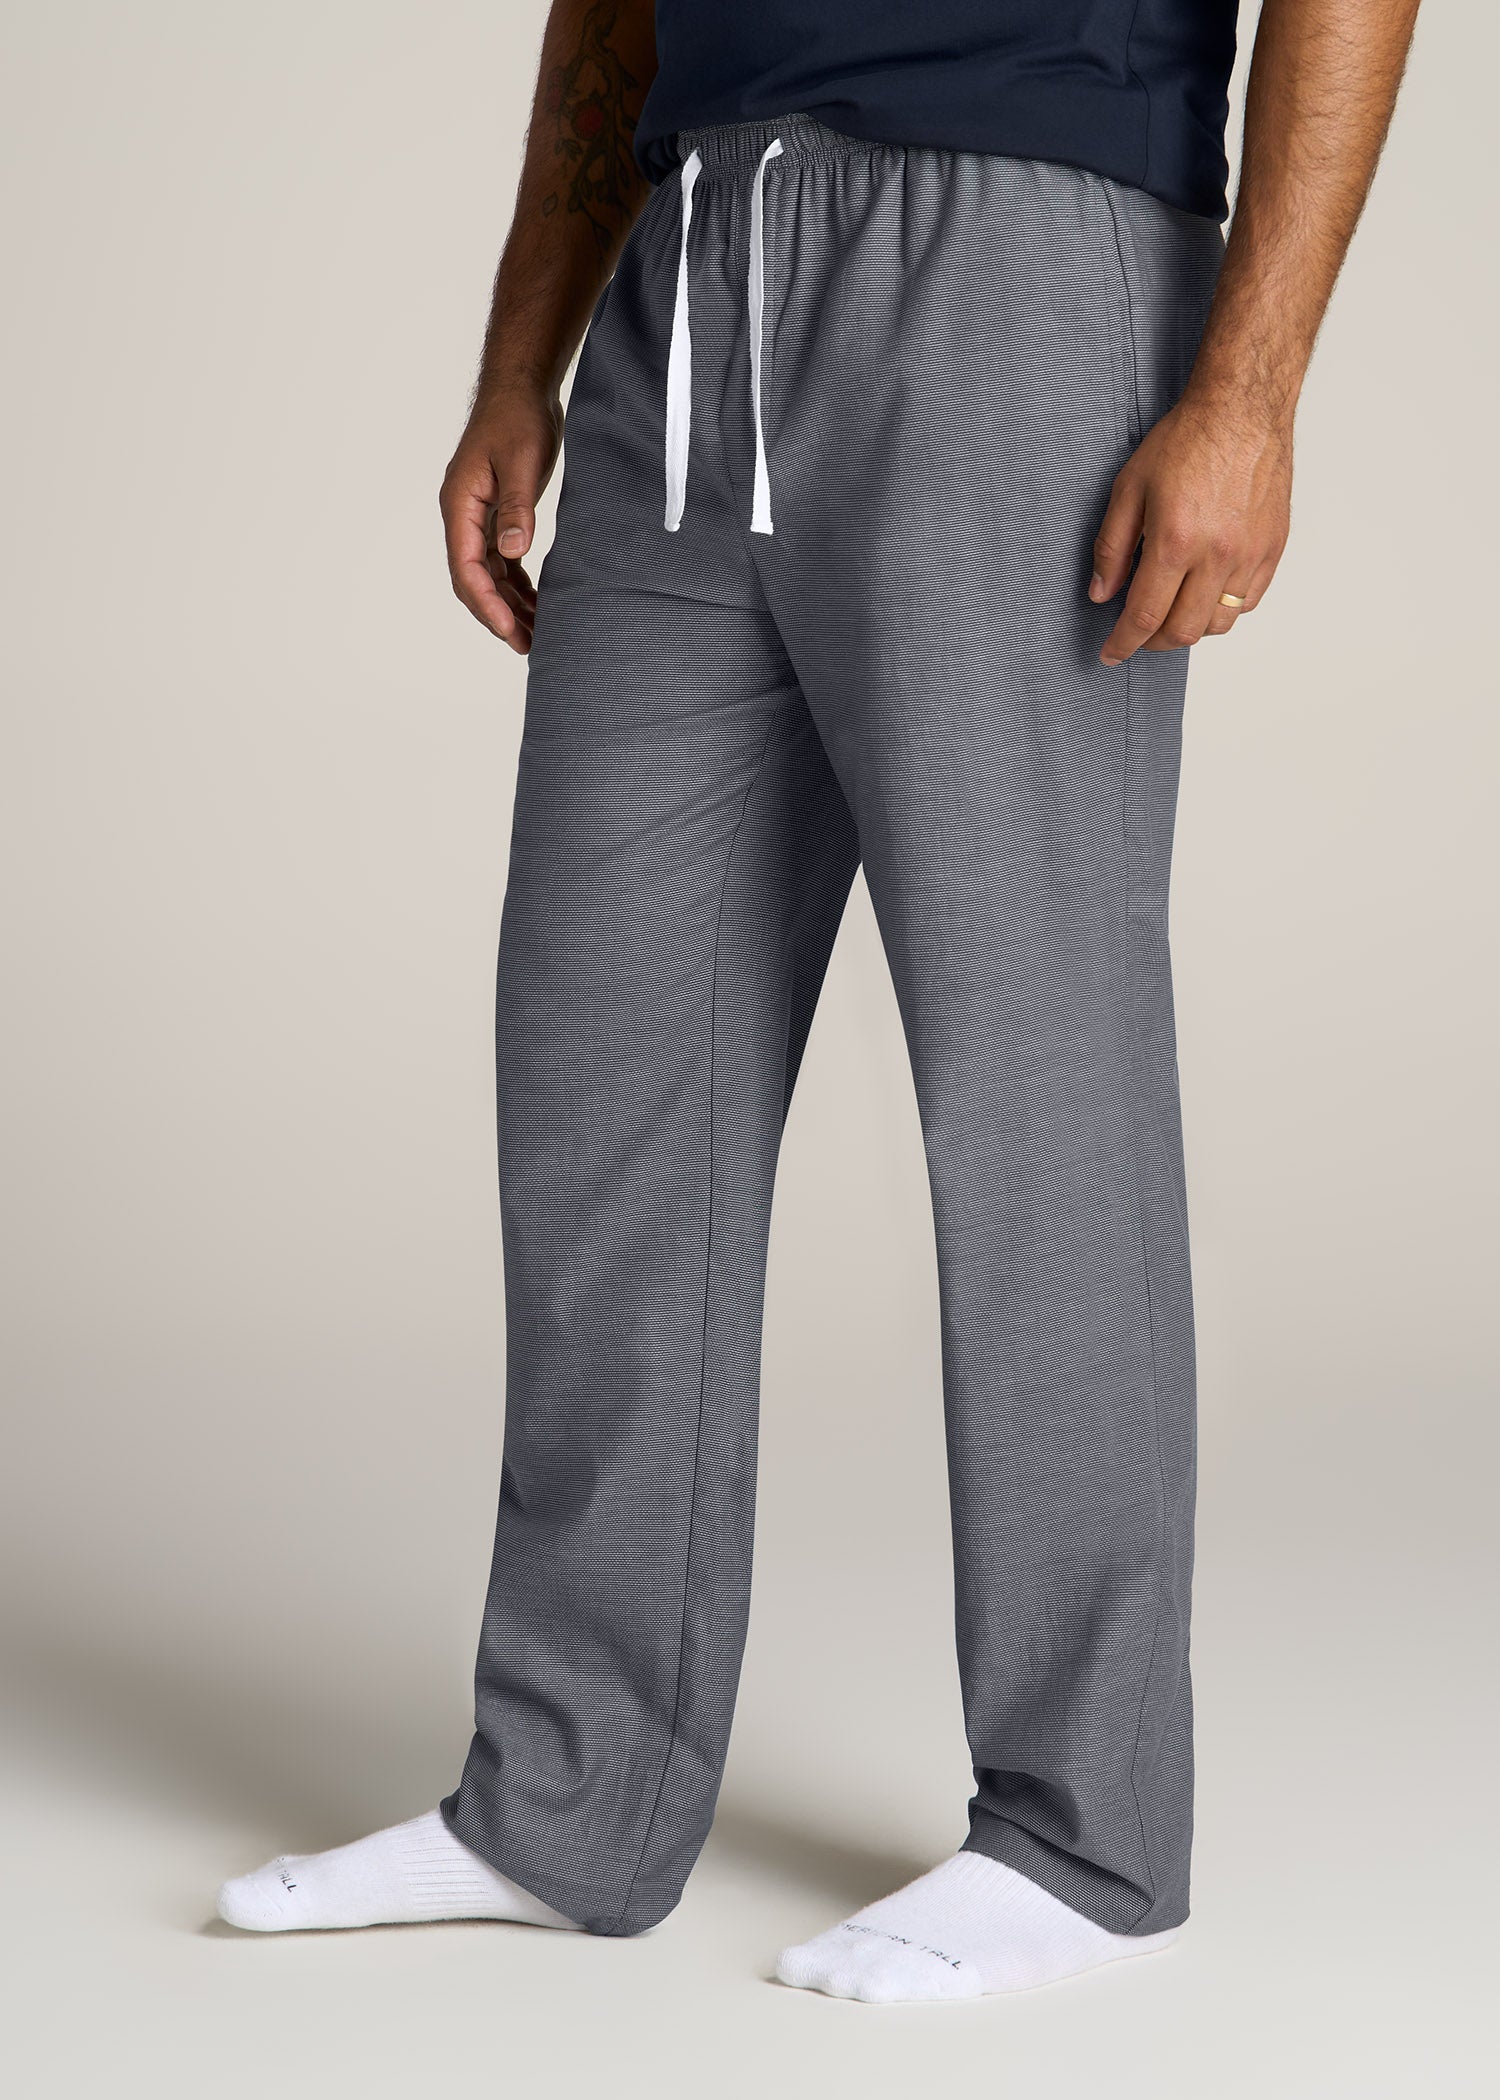 Men's Woven Pants, Men's Sleepwear